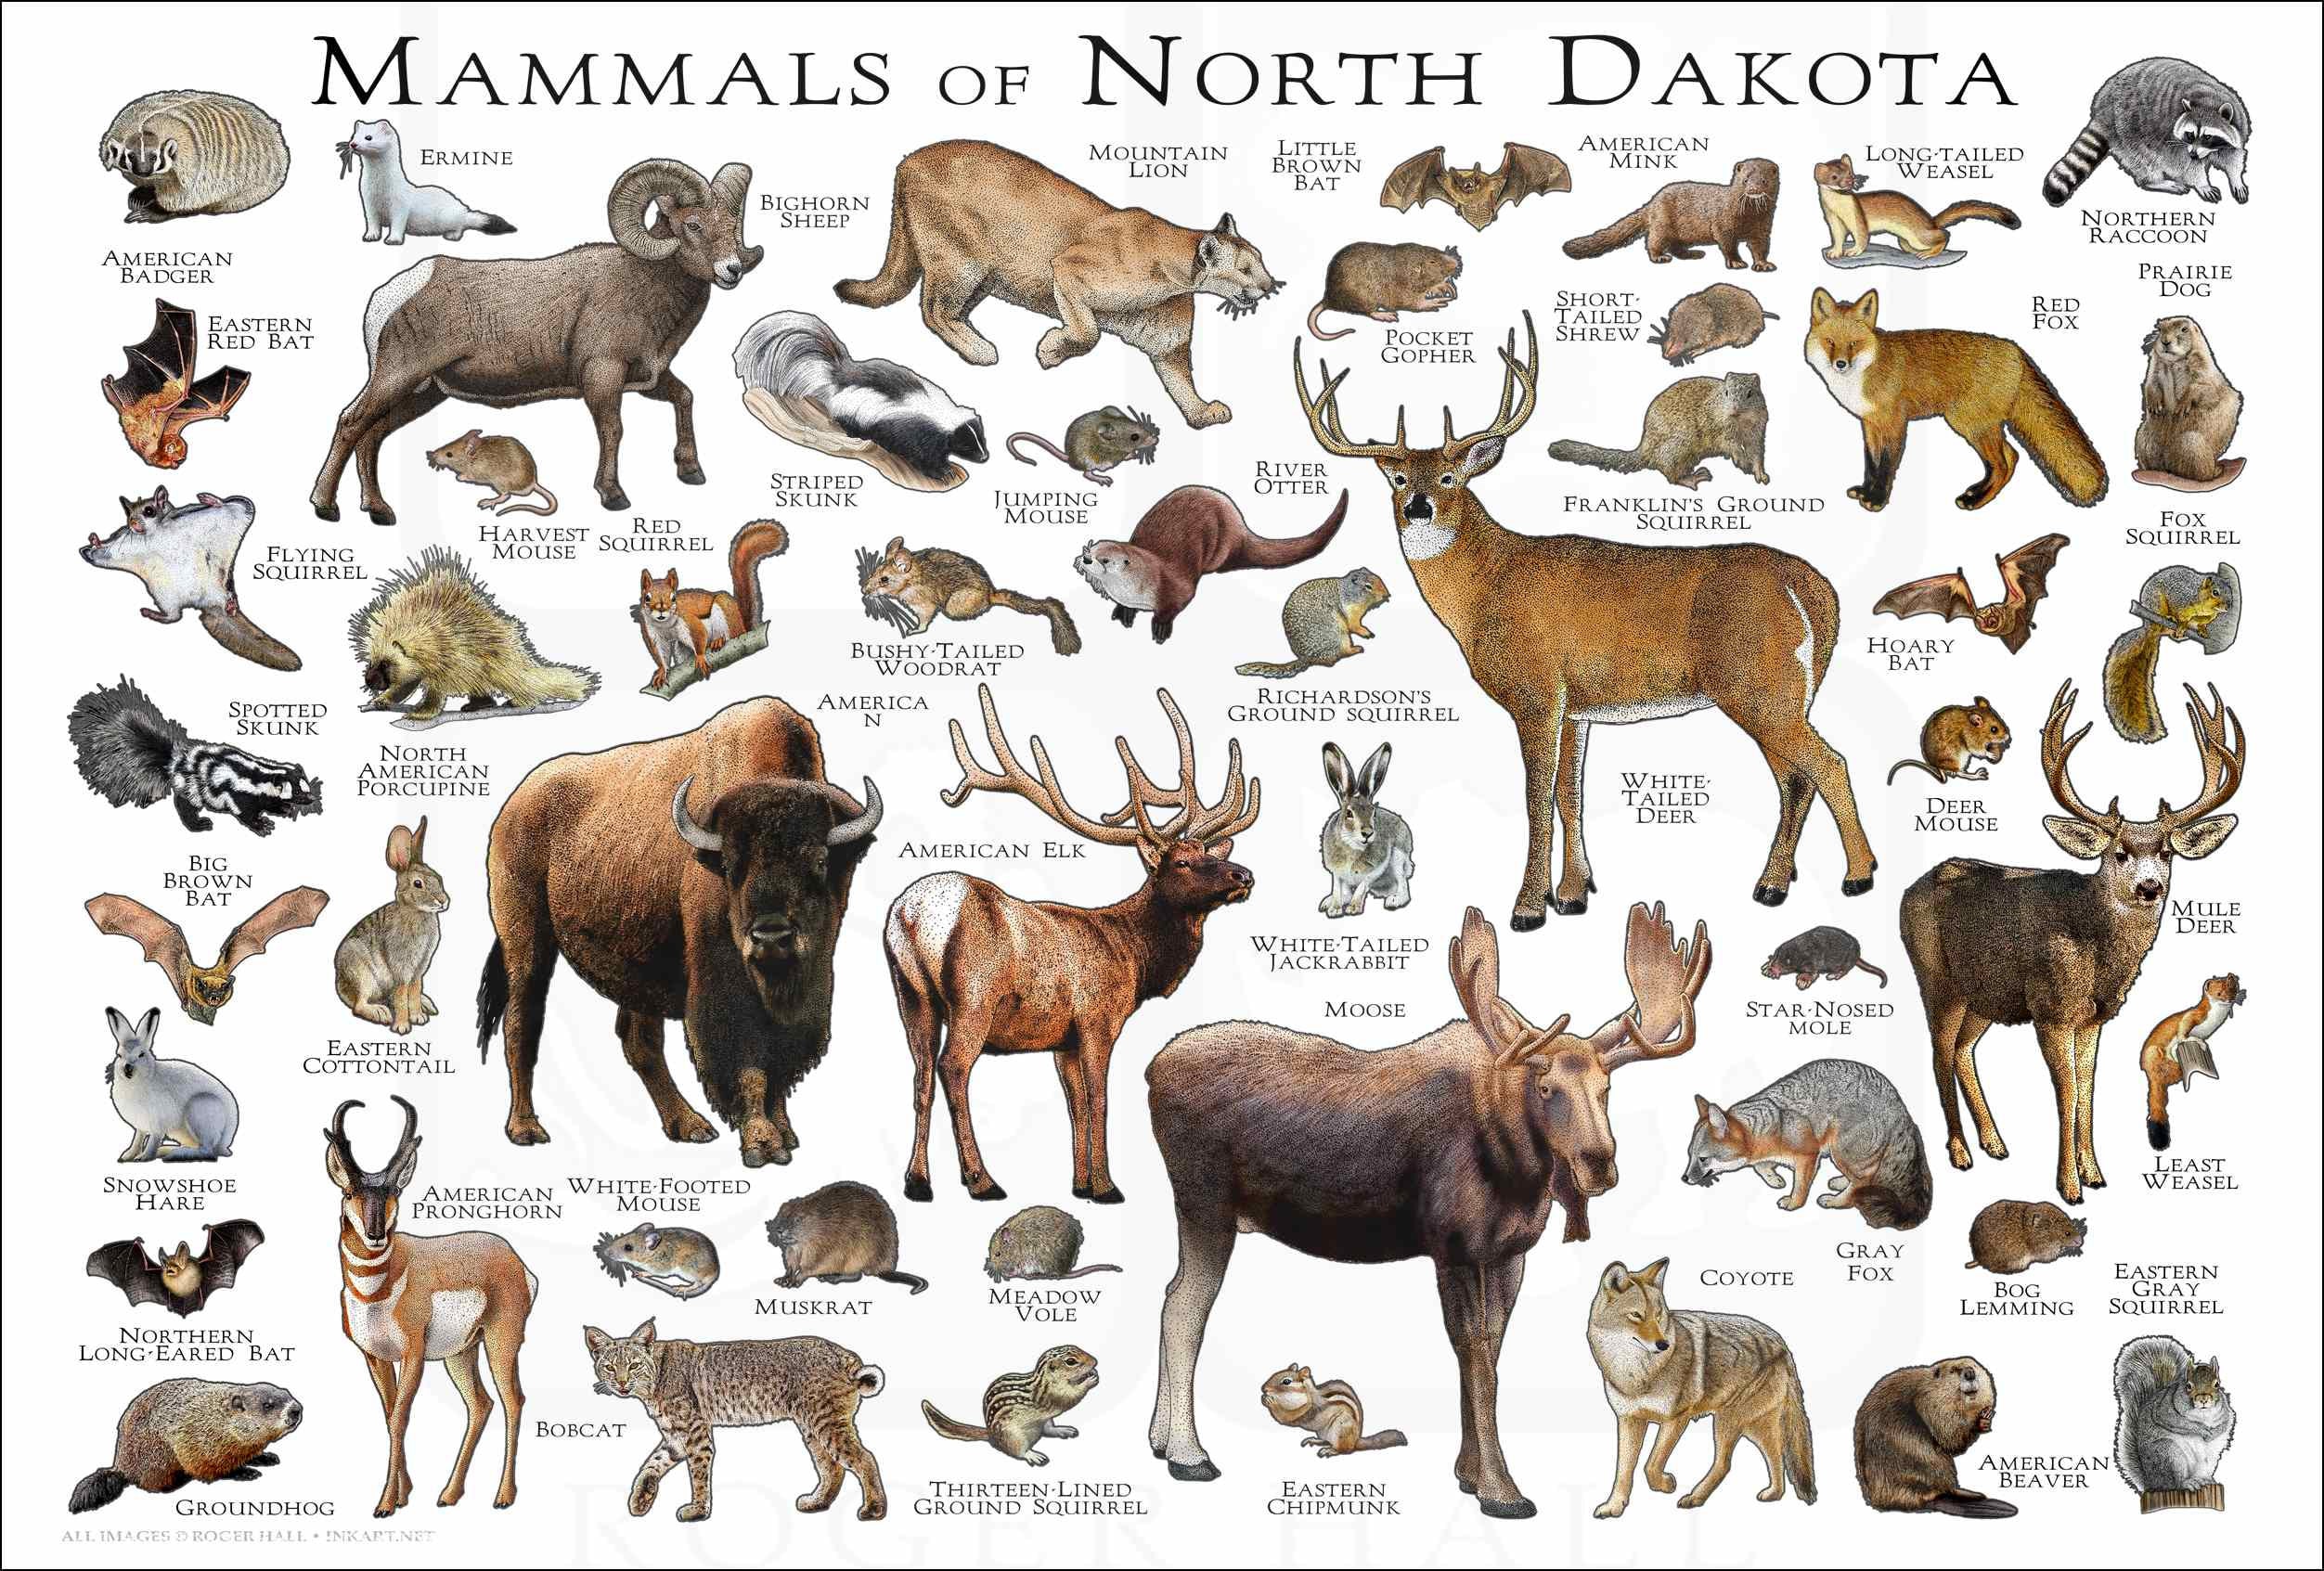 Mammals of North Dakota Poster Print / North Dakota Mammals photo